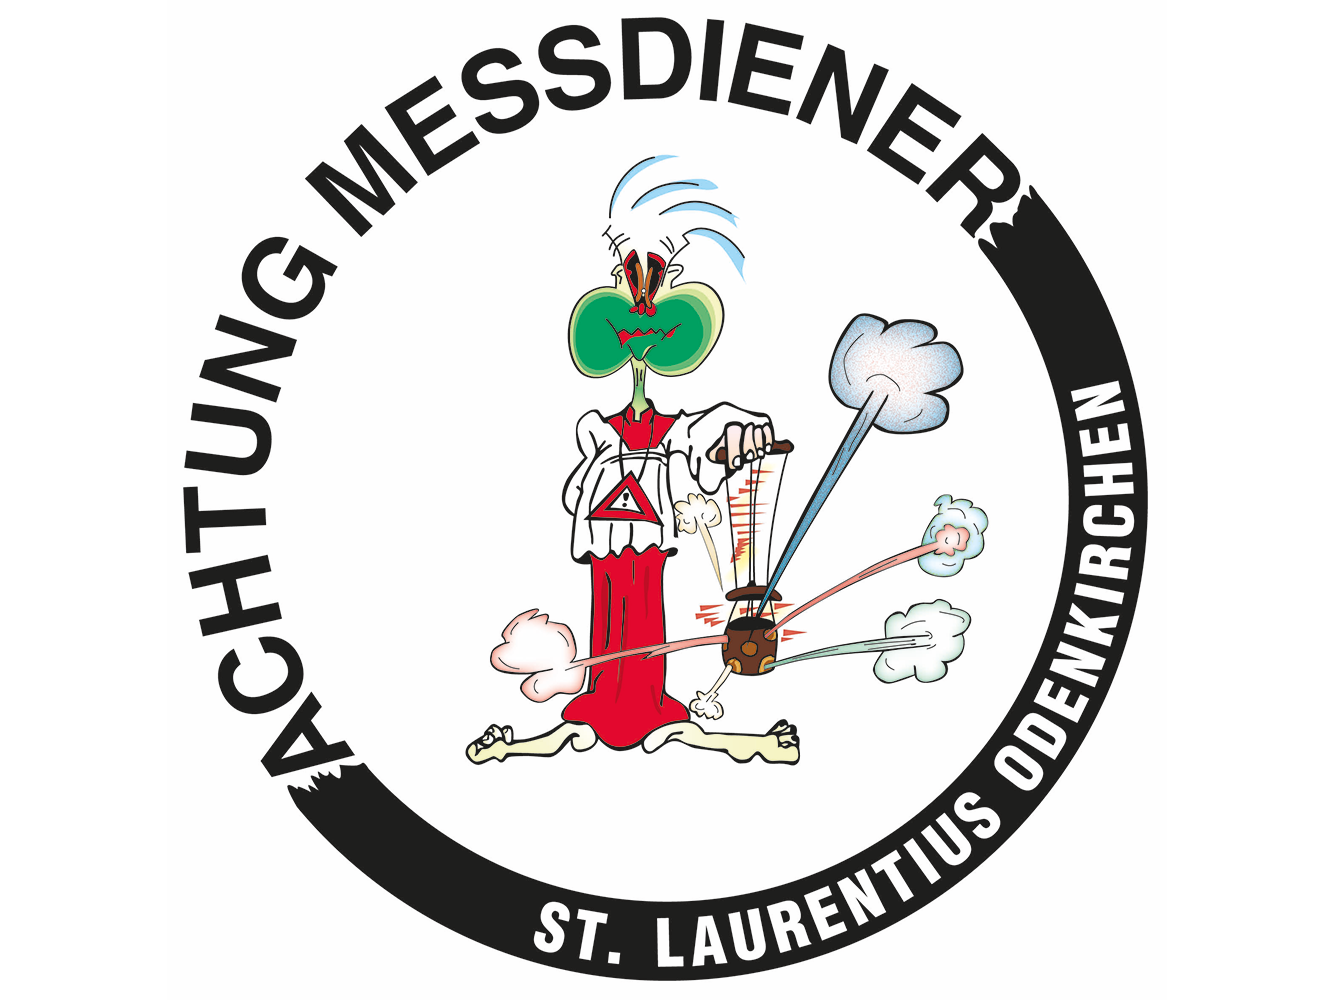 Messdiener St. Laurentius - Leiterundenwochenende (c) Messdiener St. Laurentius